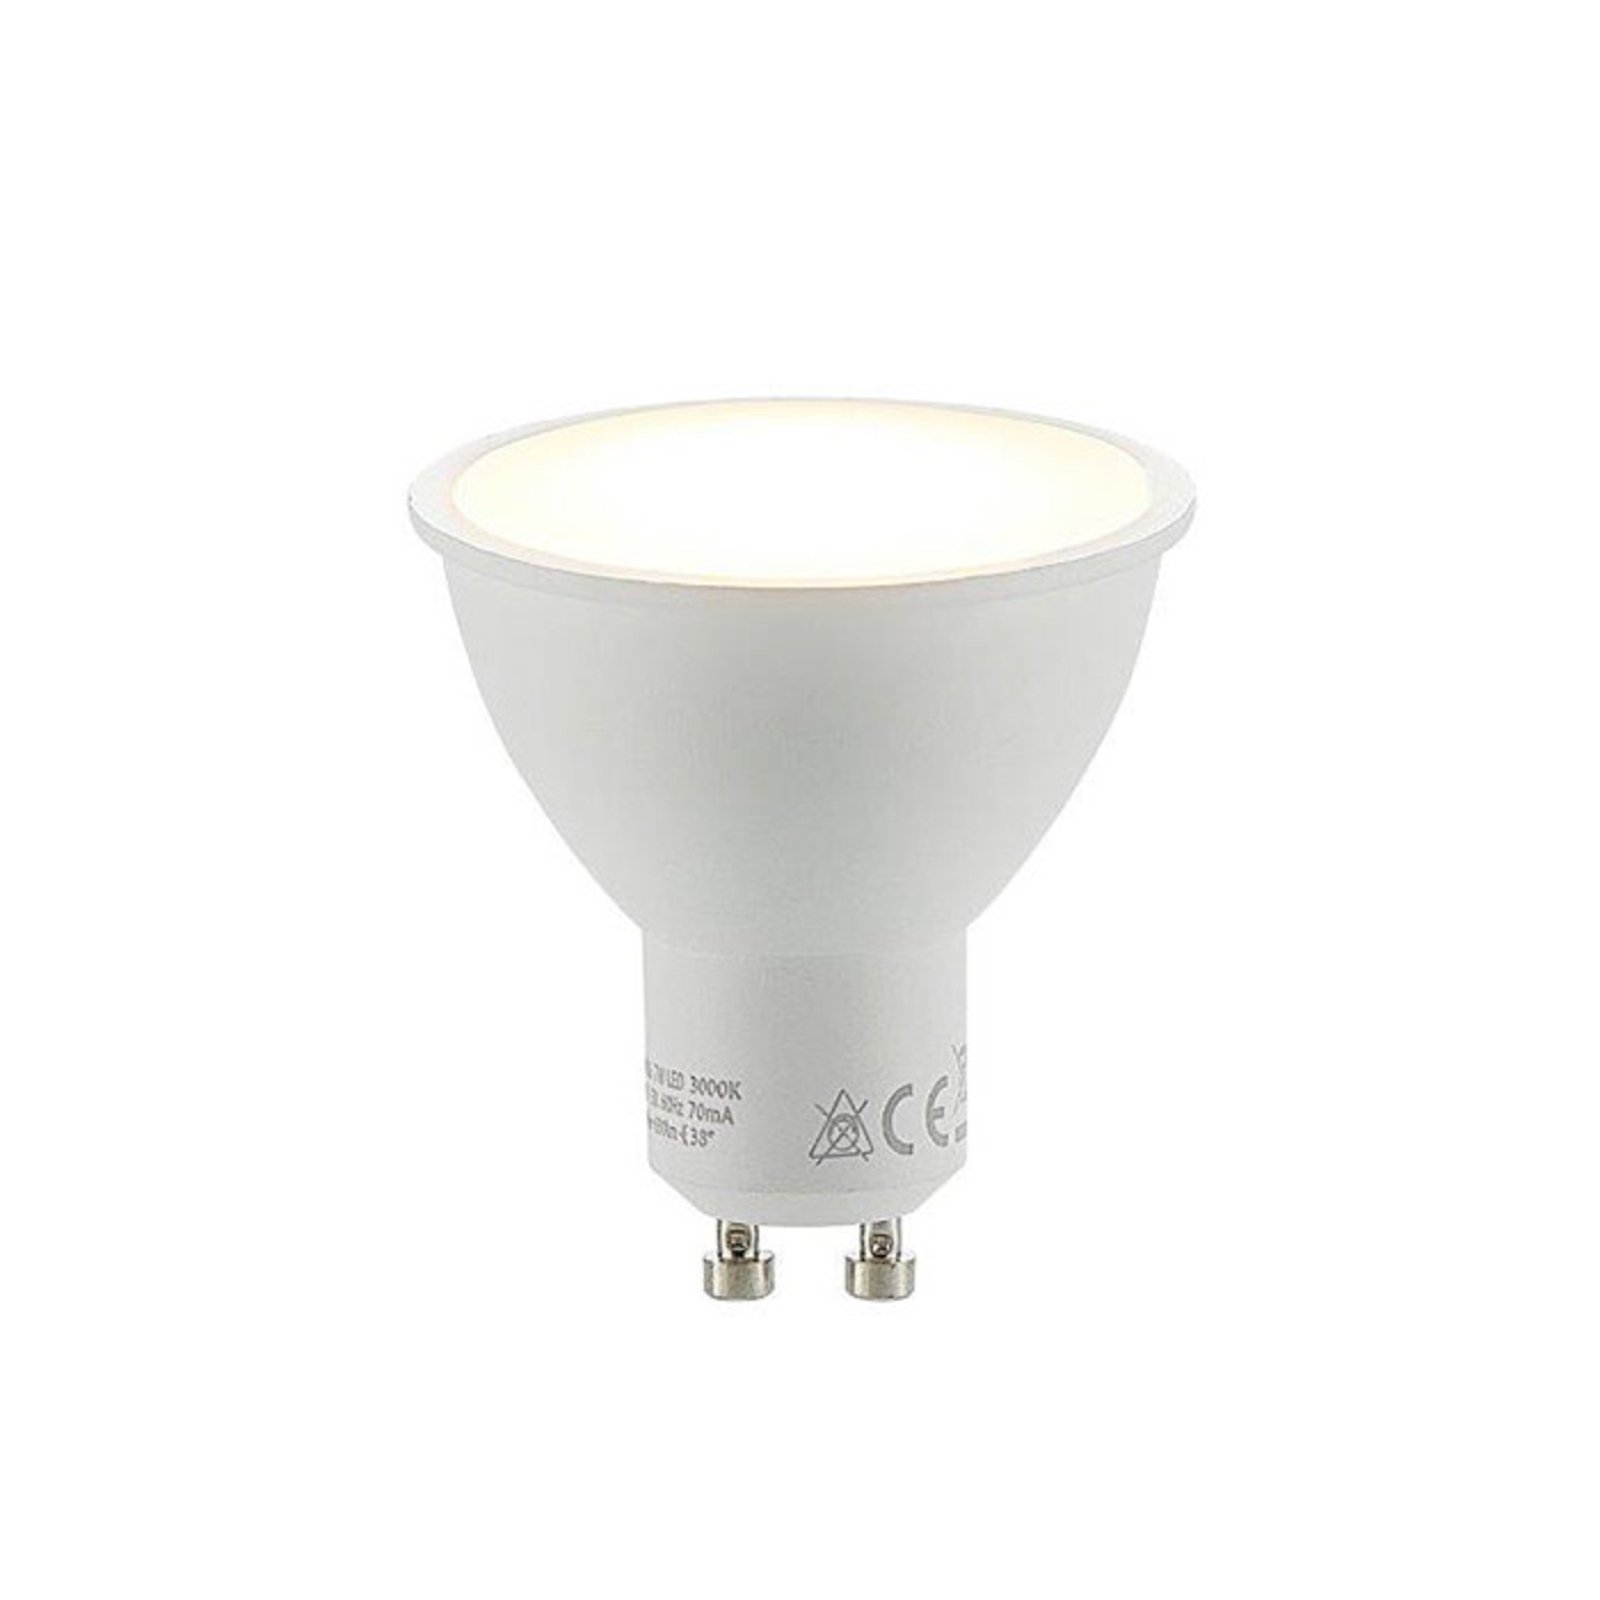 LED reflector bulb GU10 7 W 3,000 K 120°